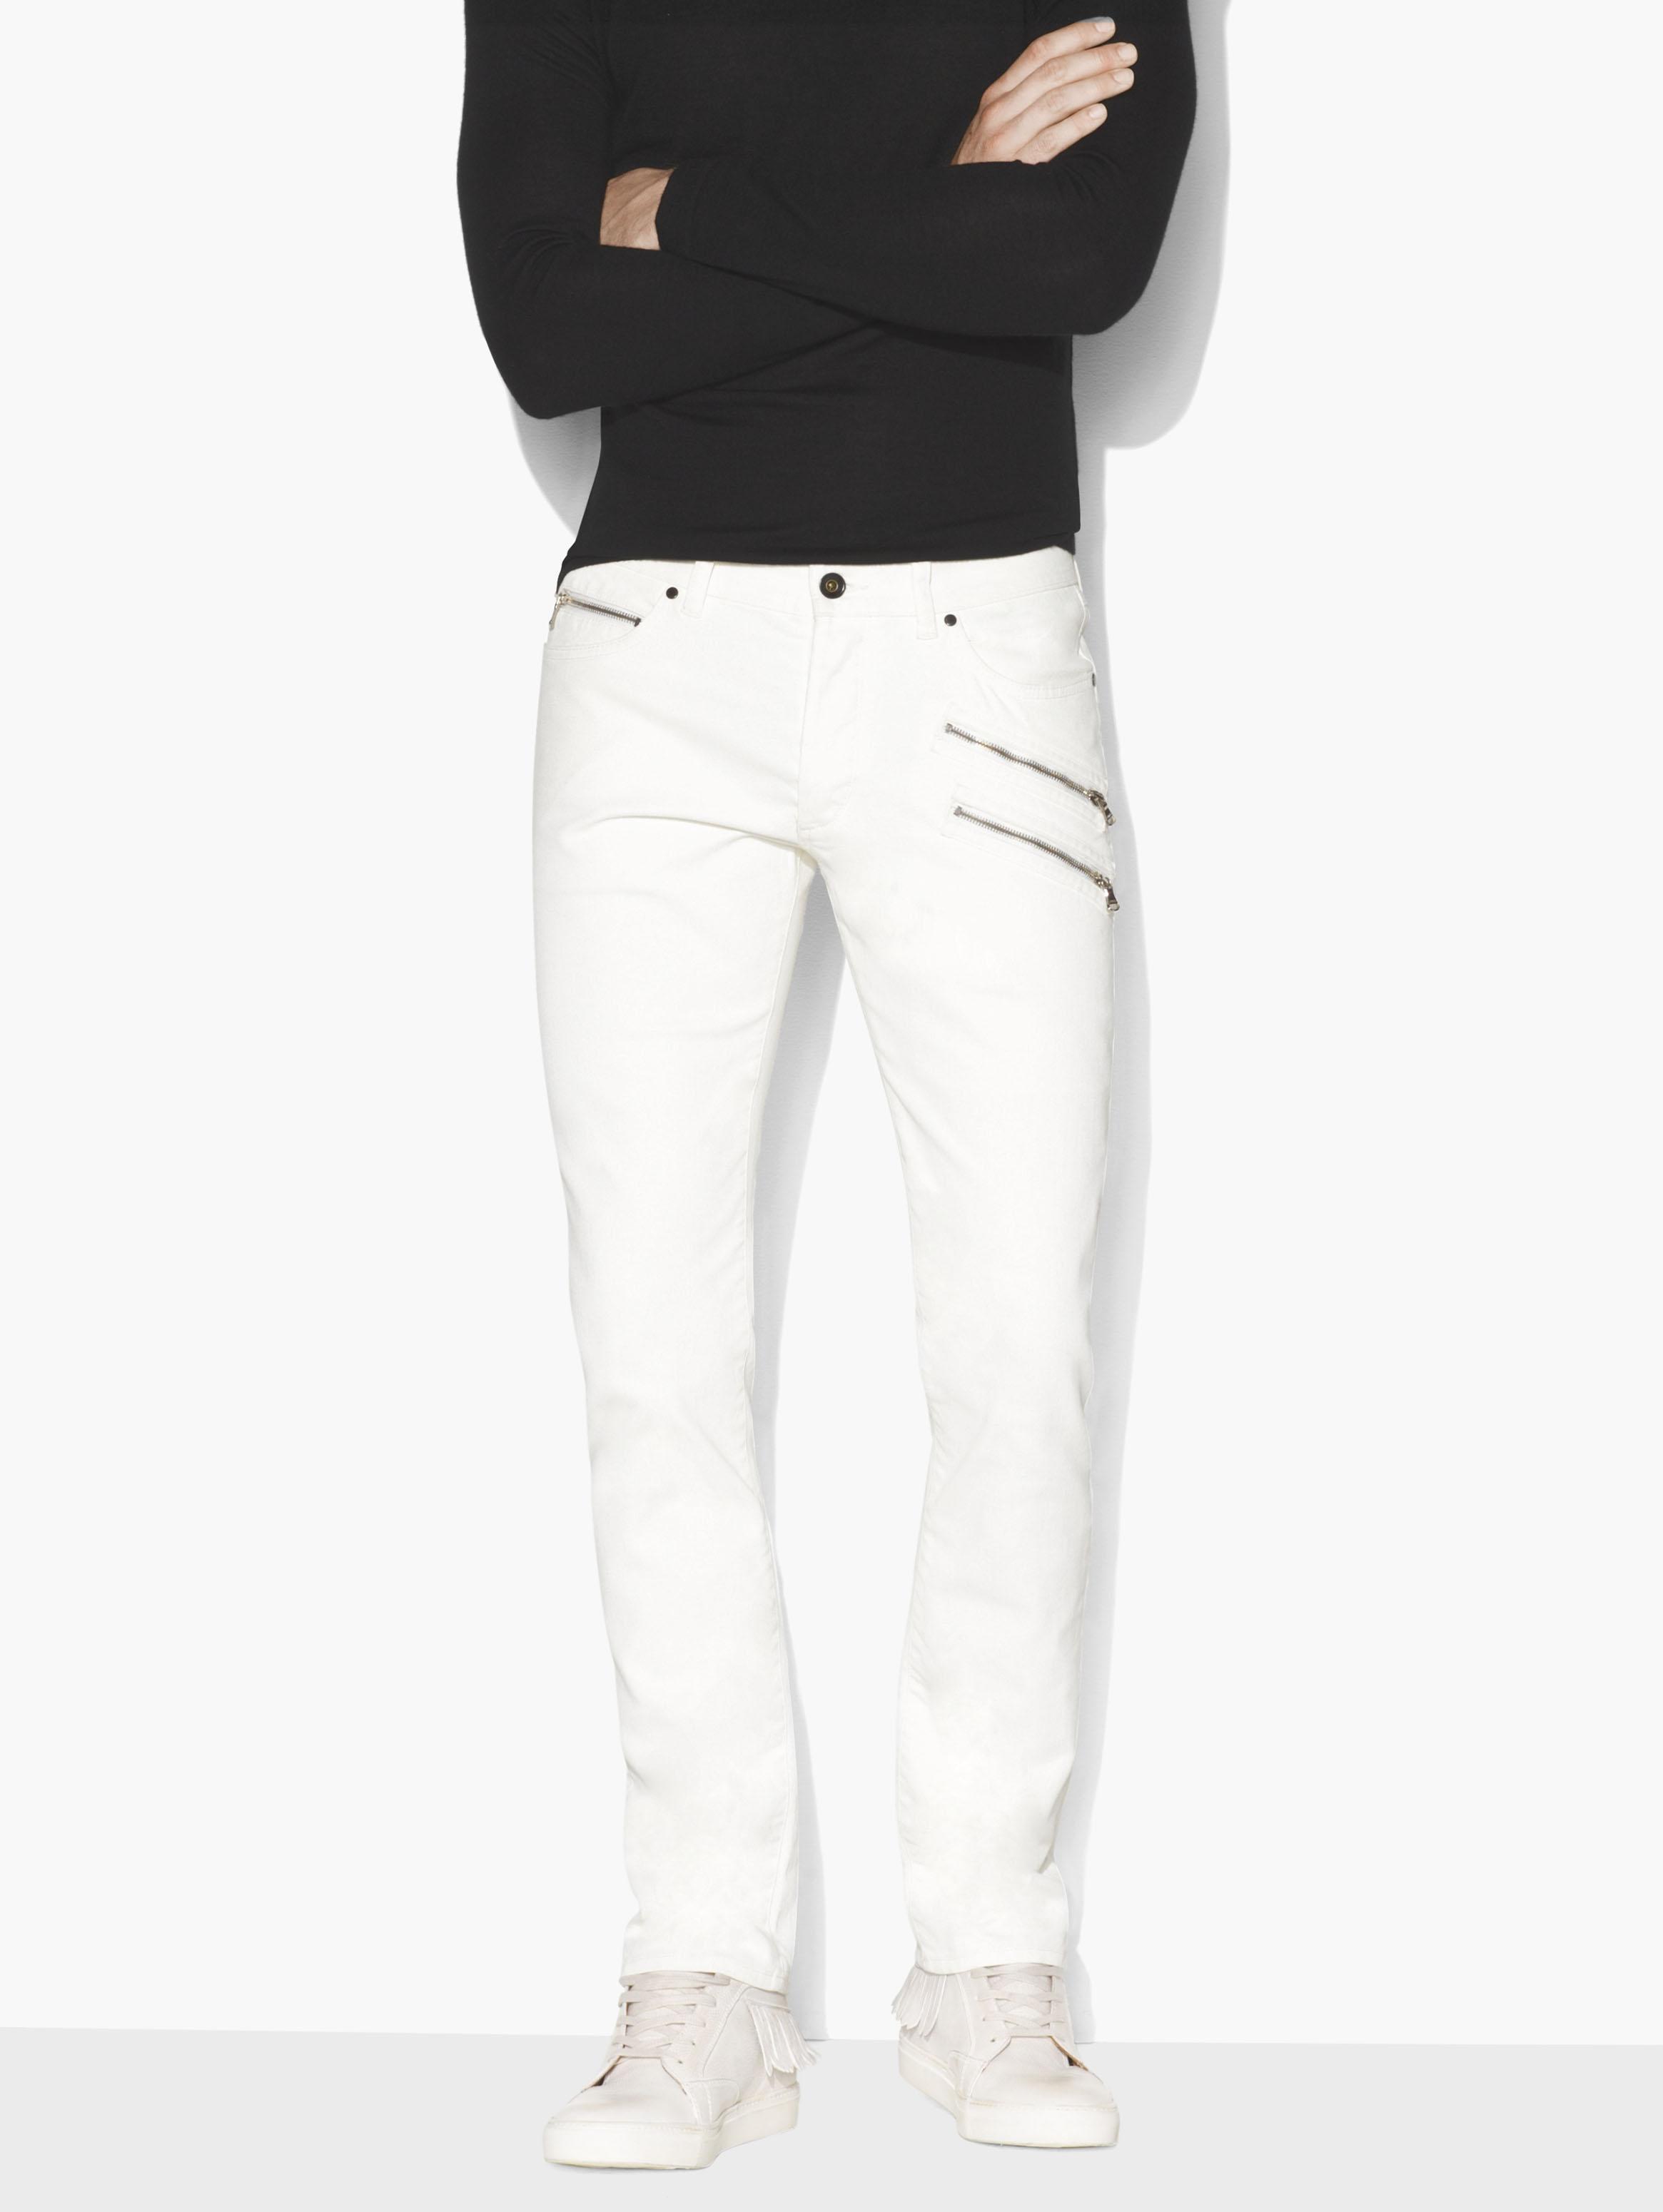 John Varvatos Denim Zip-pocket Chelsea Jean in White for Men - Lyst